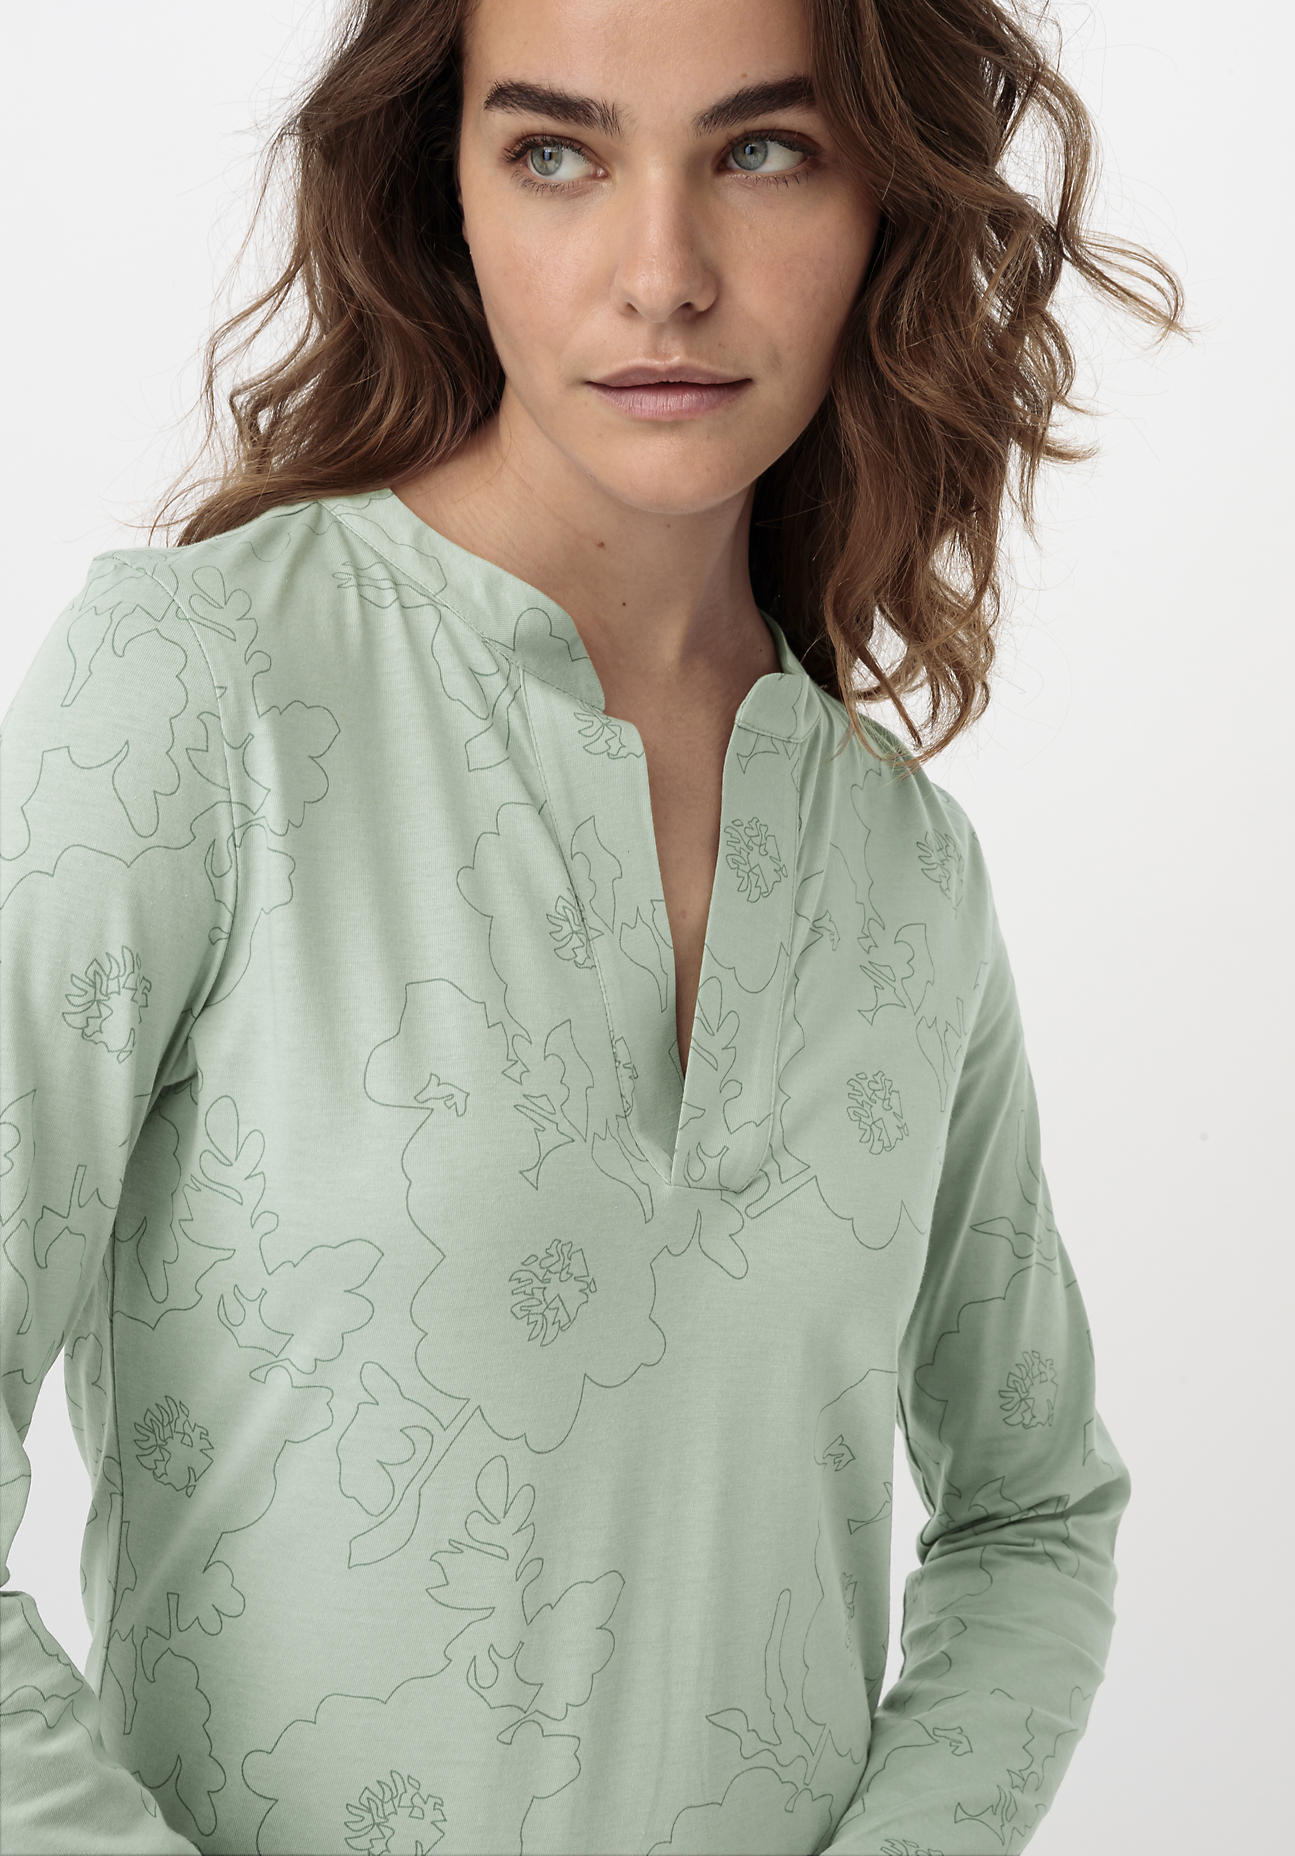 hessnatur Damen Nachthemd aus Bio-Baumwolle - grün - Größe 34